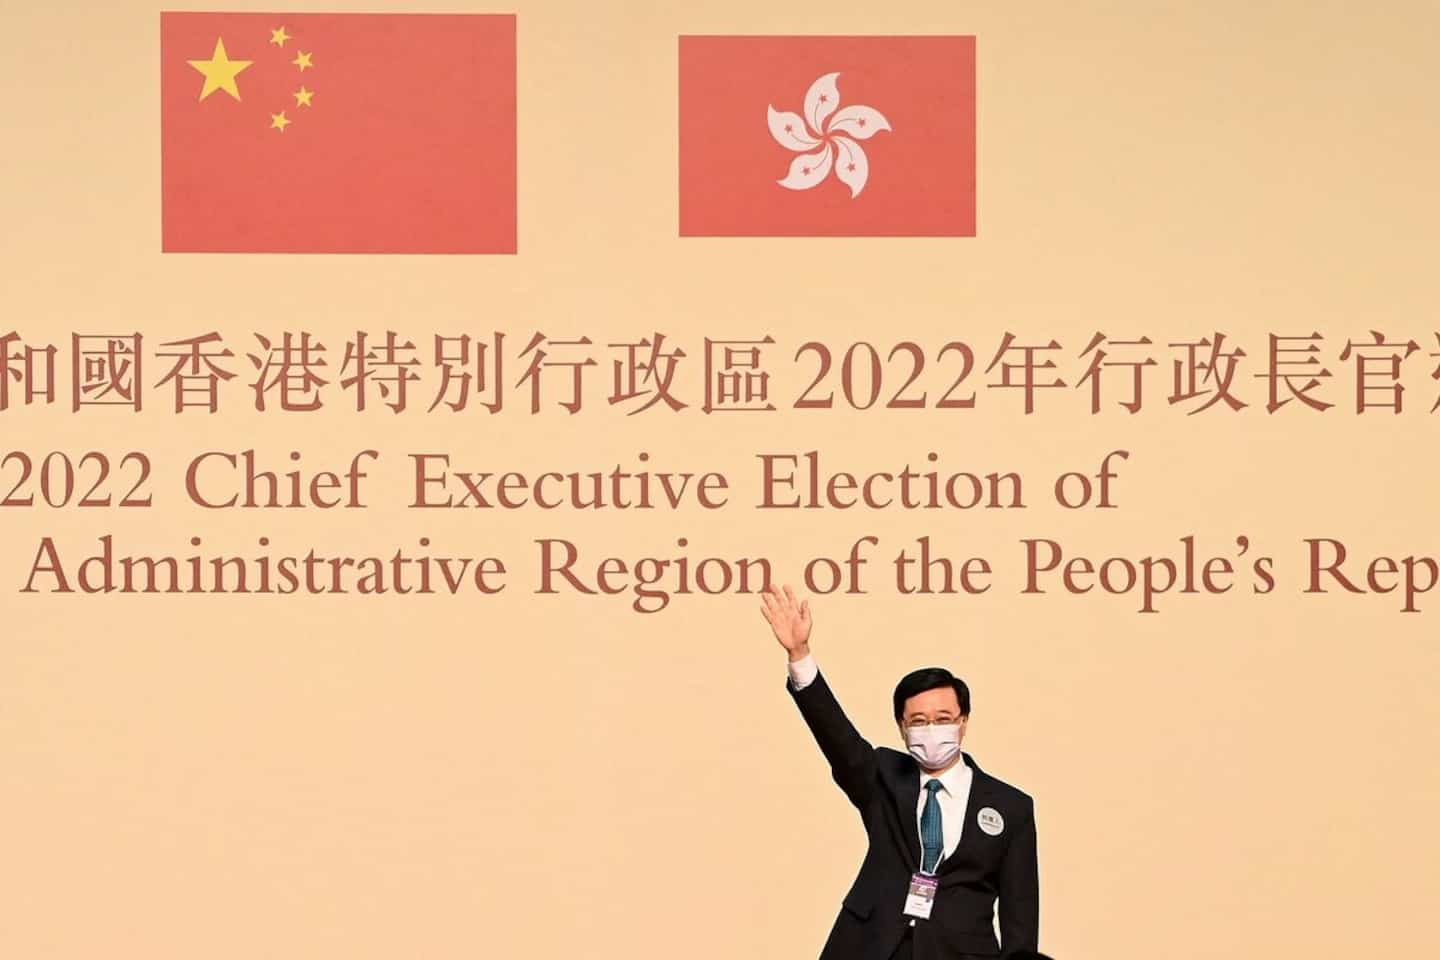 Hong Kong: future leader John Lee received in Beijing by Xi Jinping